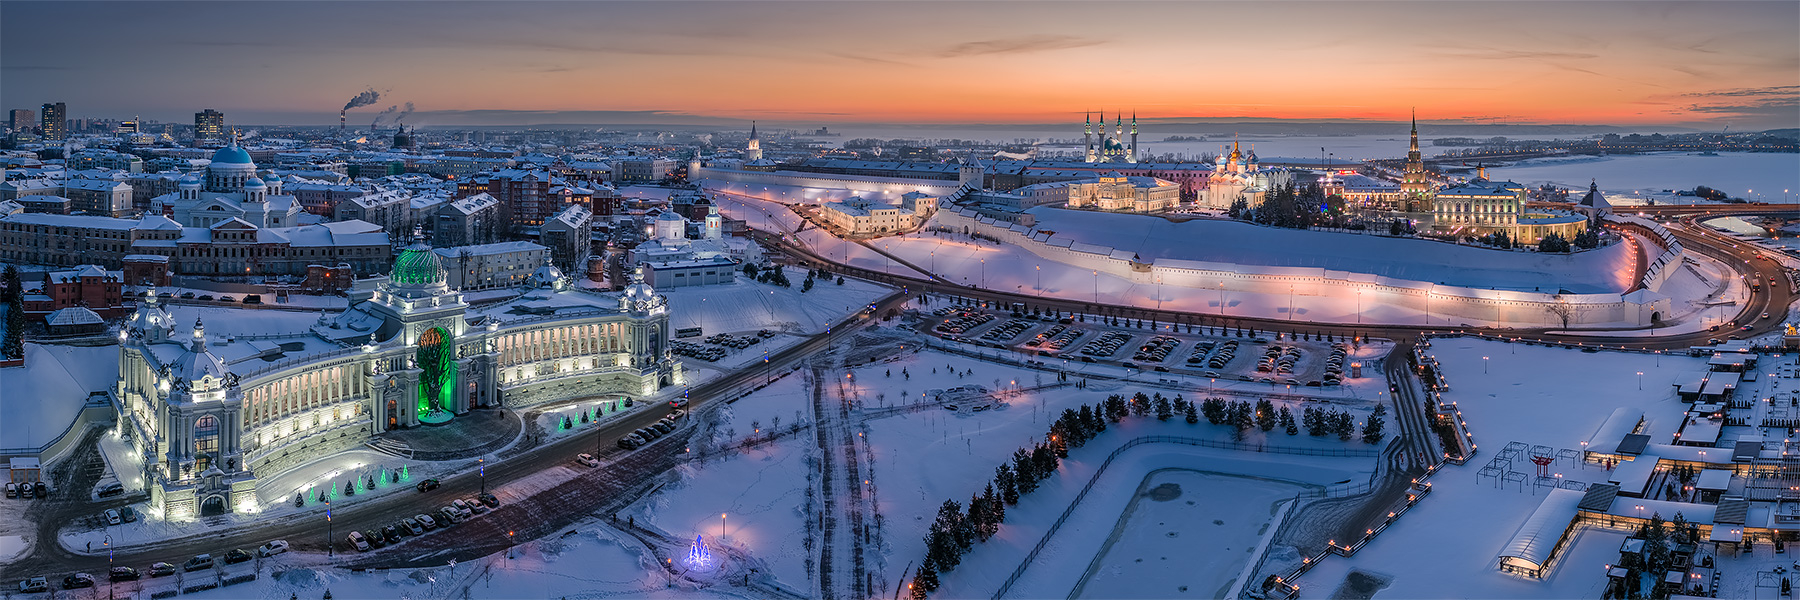 Казань с коптера зимой